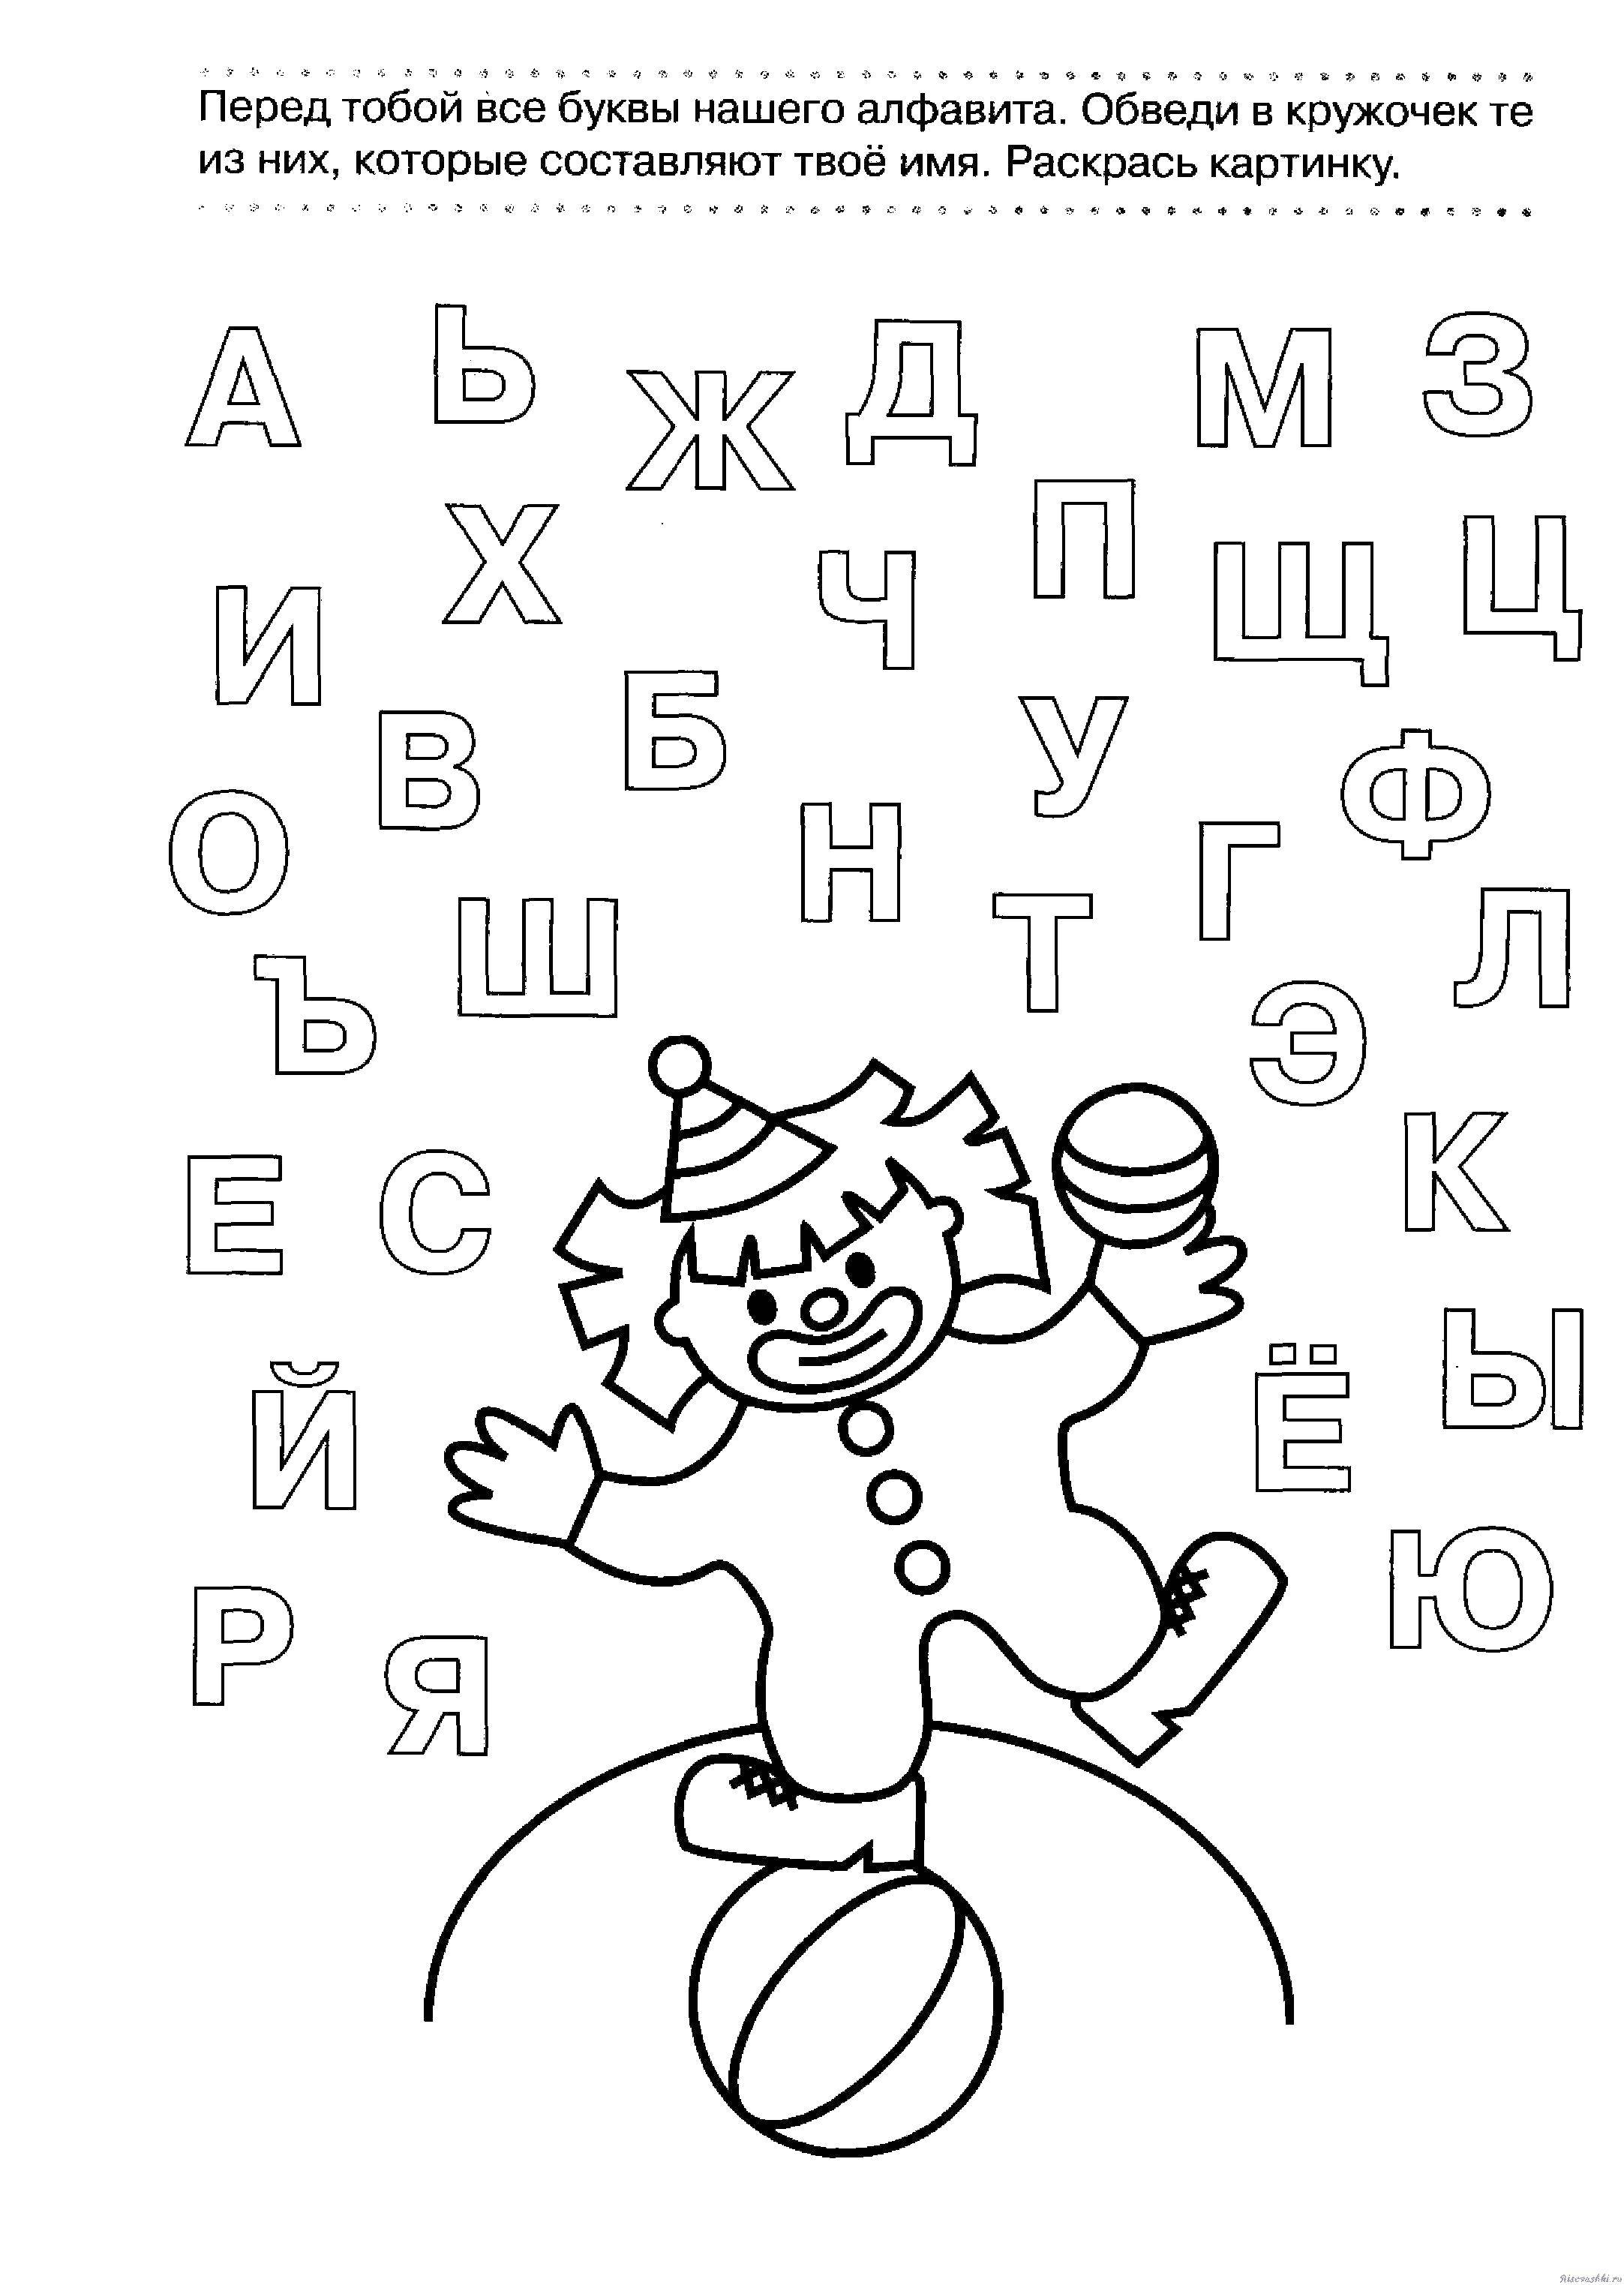 Азбука найти букву. Задания для изучения алфавита. Азбука задания для дошкольников. Буква с задания для дошкольников. Задания для детей с буквами.